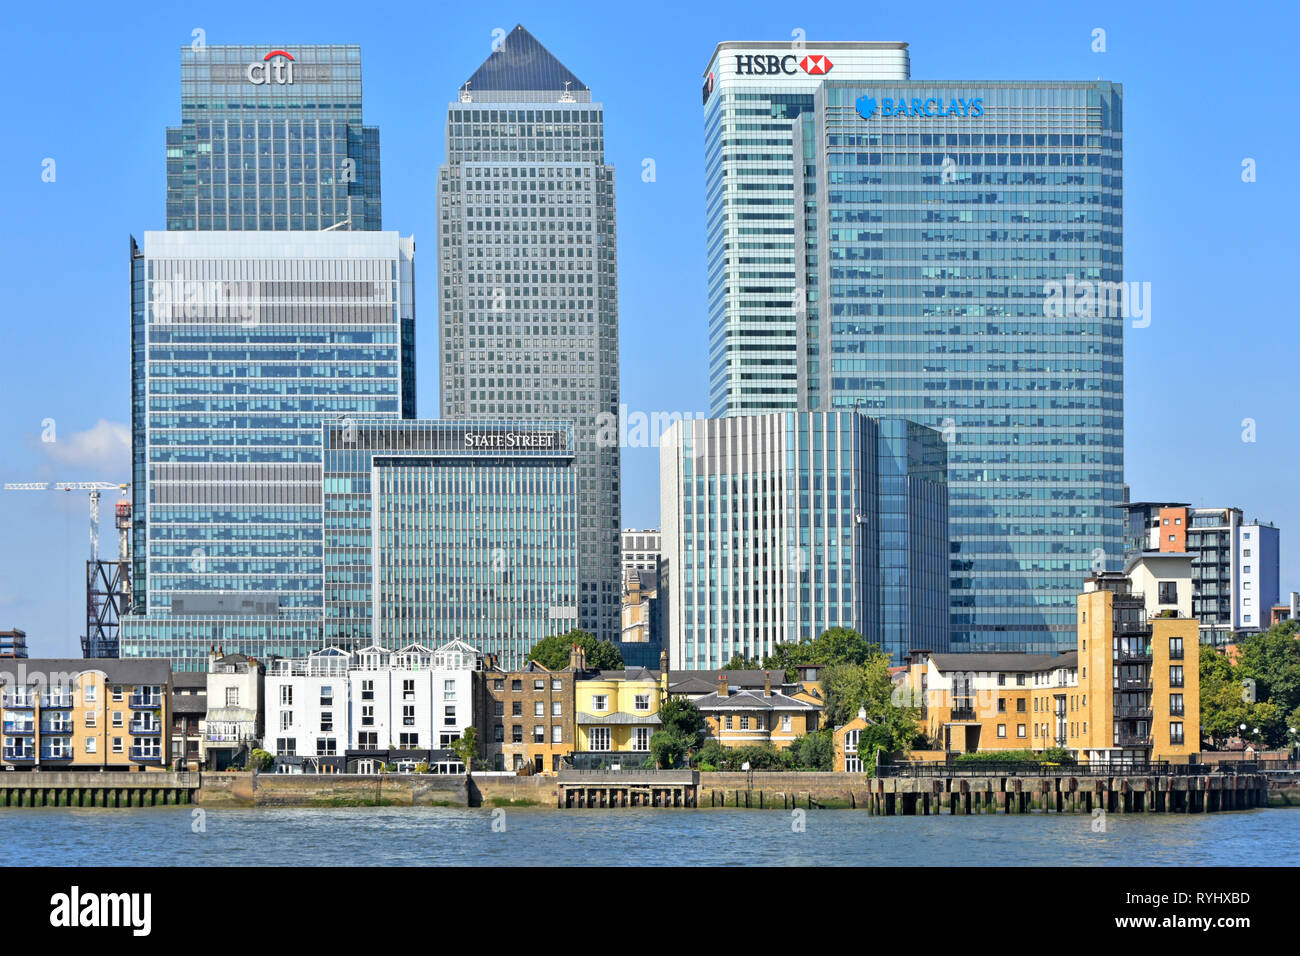 Modernes Wahrzeichen Wolkenkratzer bauen auf Canary Wharf London Docklands Skyline in finanziellen Bankenviertel HQ bank Büro für Barclays, HSBC England Großbritannien Stockfoto